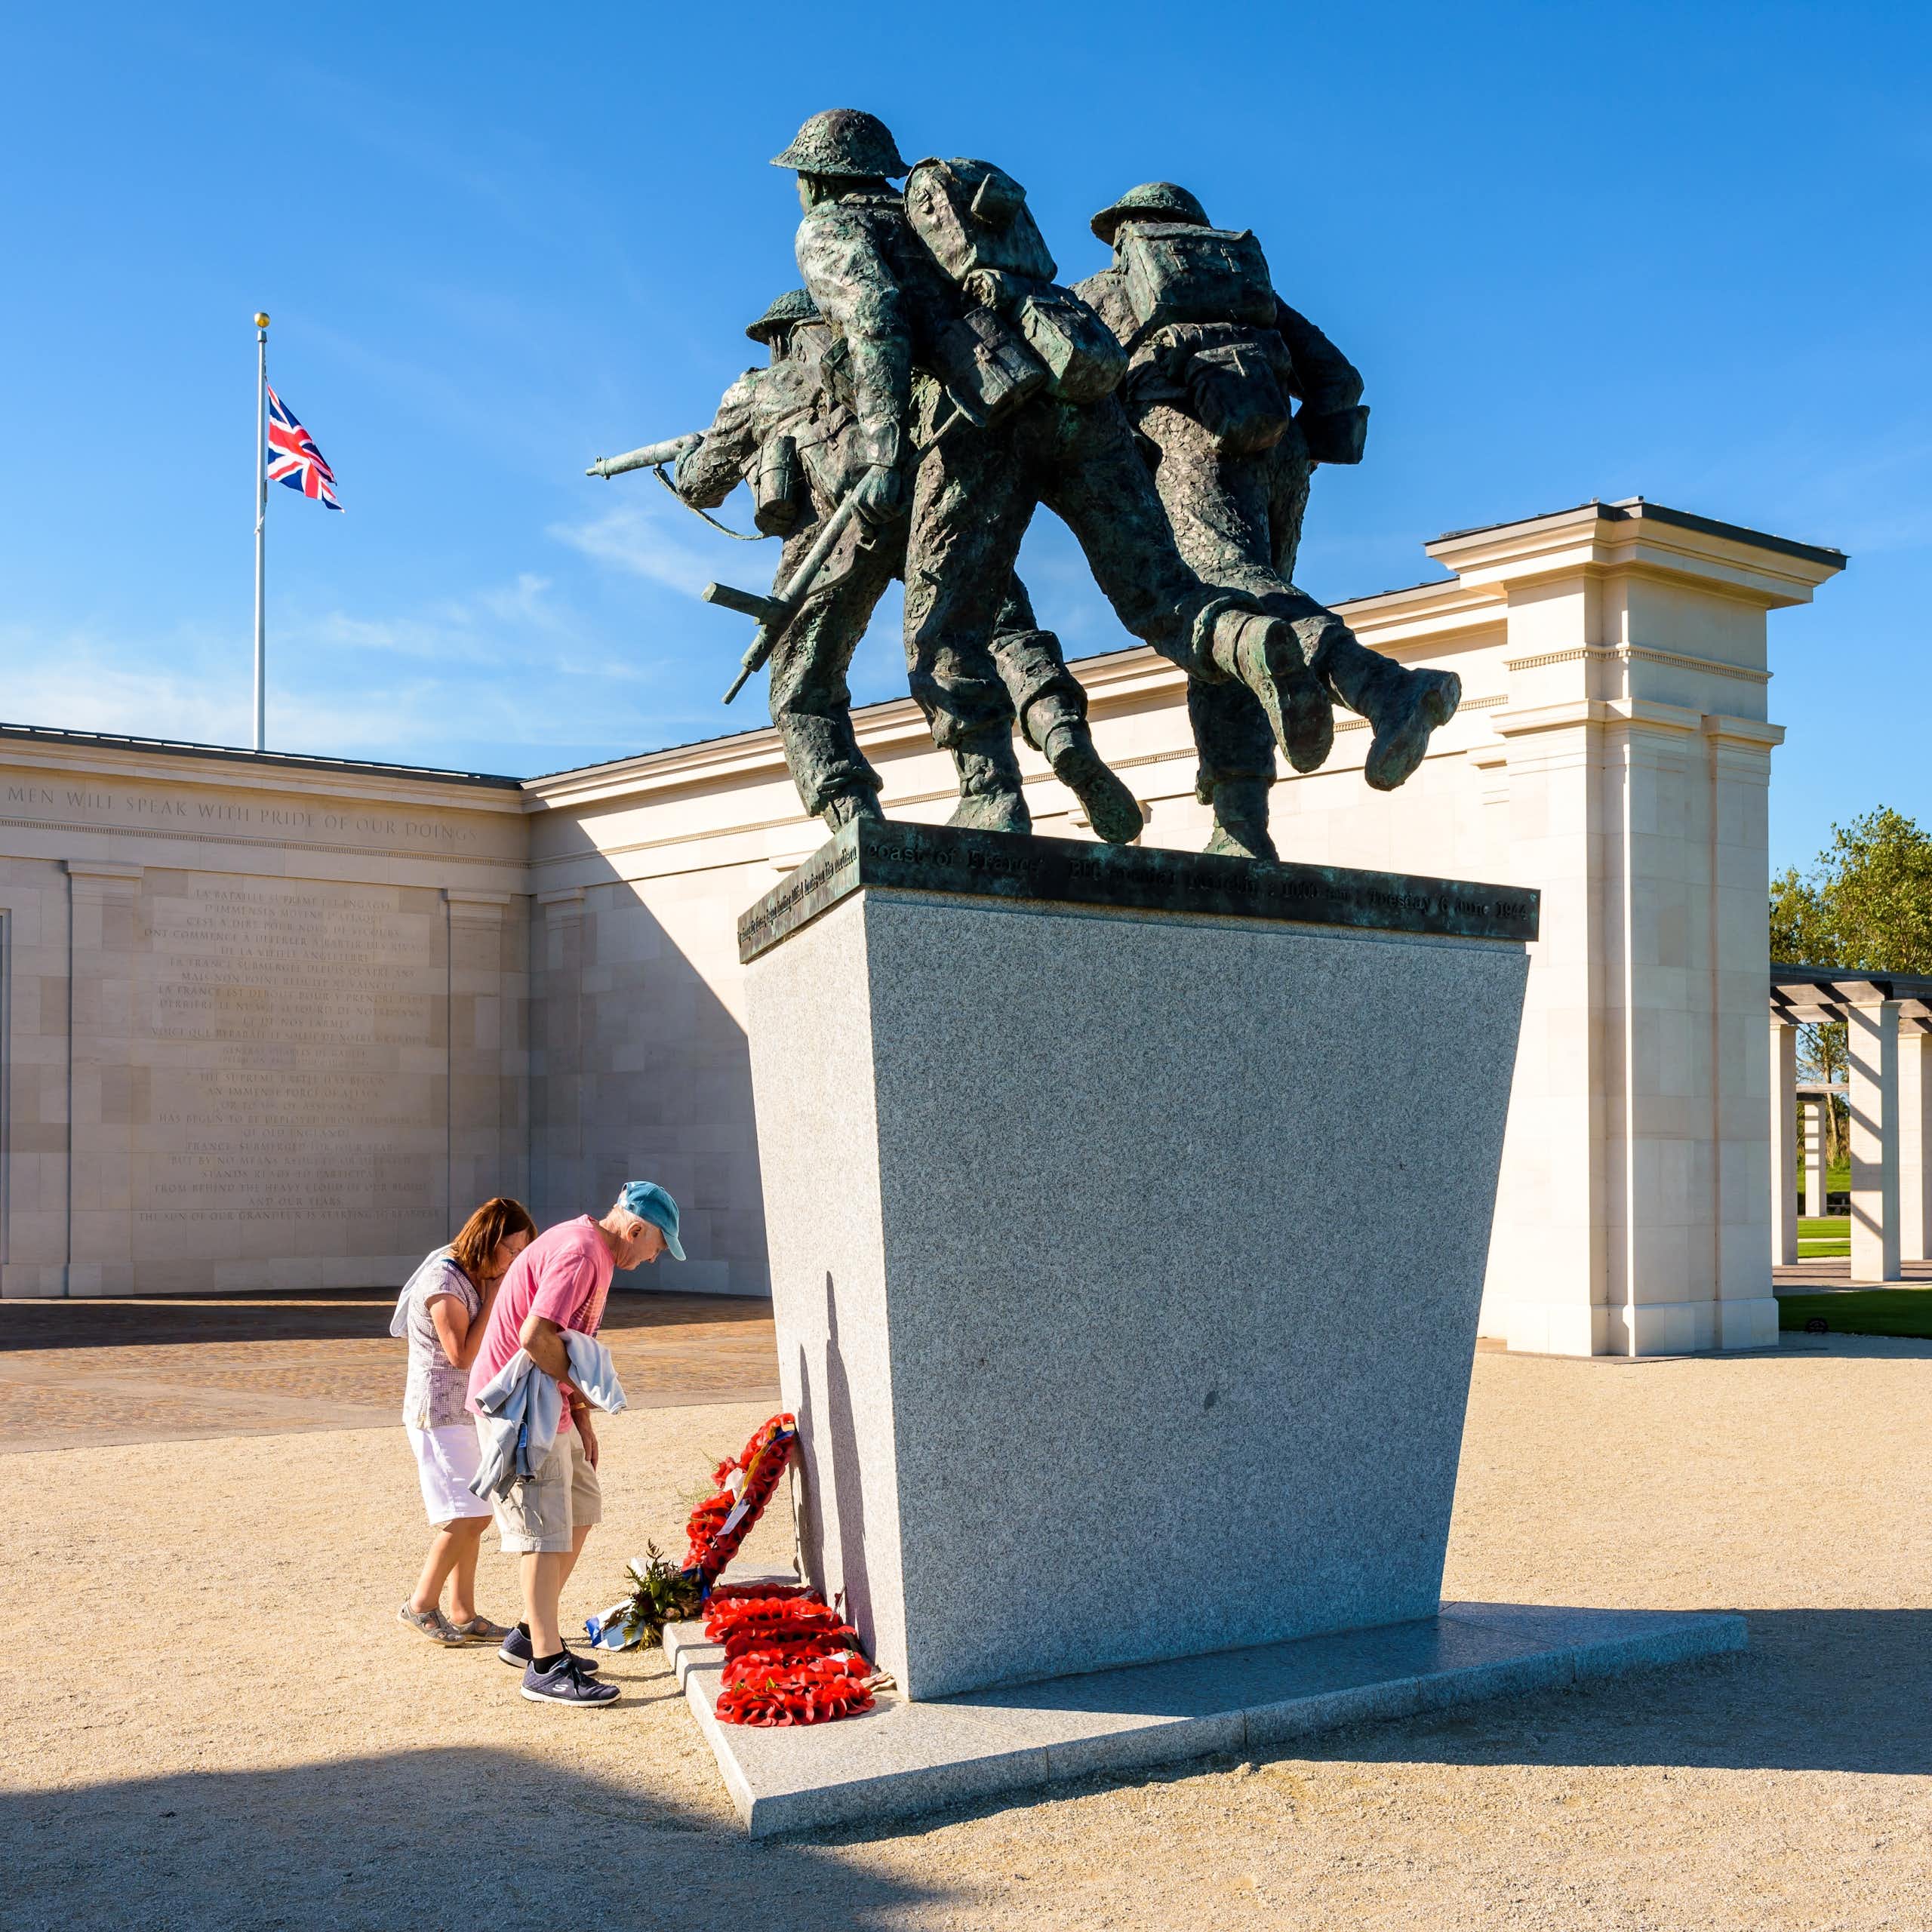 Deux personnes se recueillent au pied d'un monument commémoratif. Derrière, on voit le drapeau britannique.